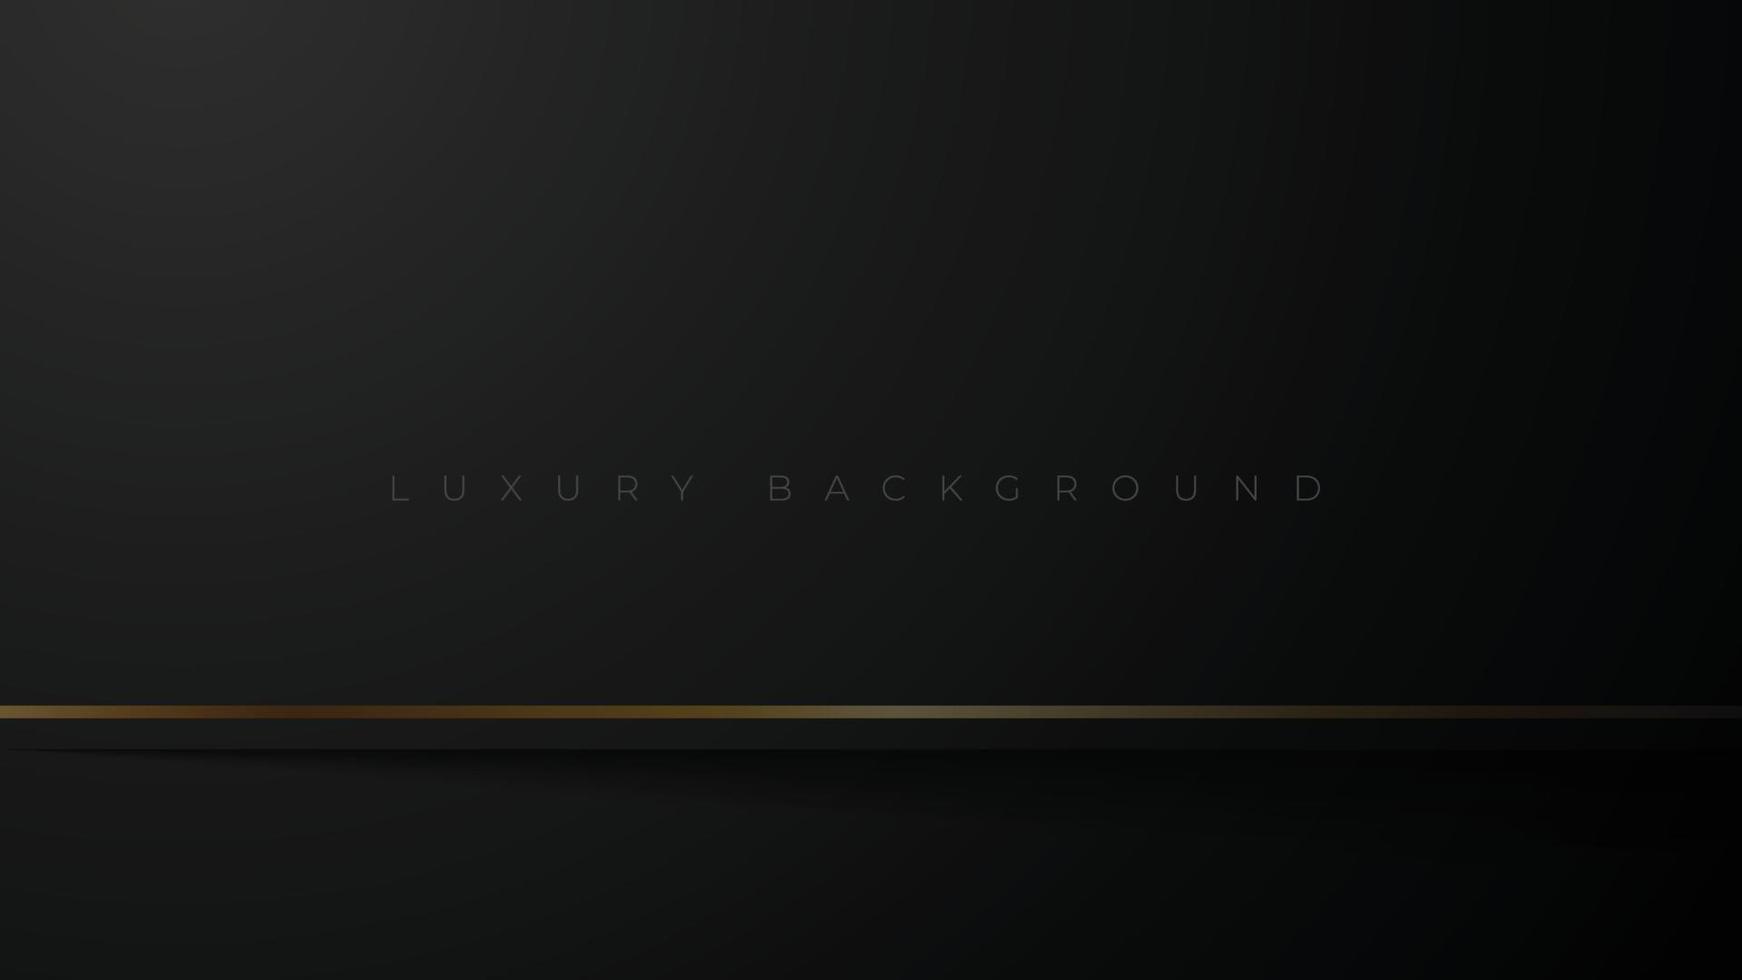 fond noir de luxe abstrait avec des lignes dorées. fond sombre élégant minimal. illustration vectorielle premium vecteur